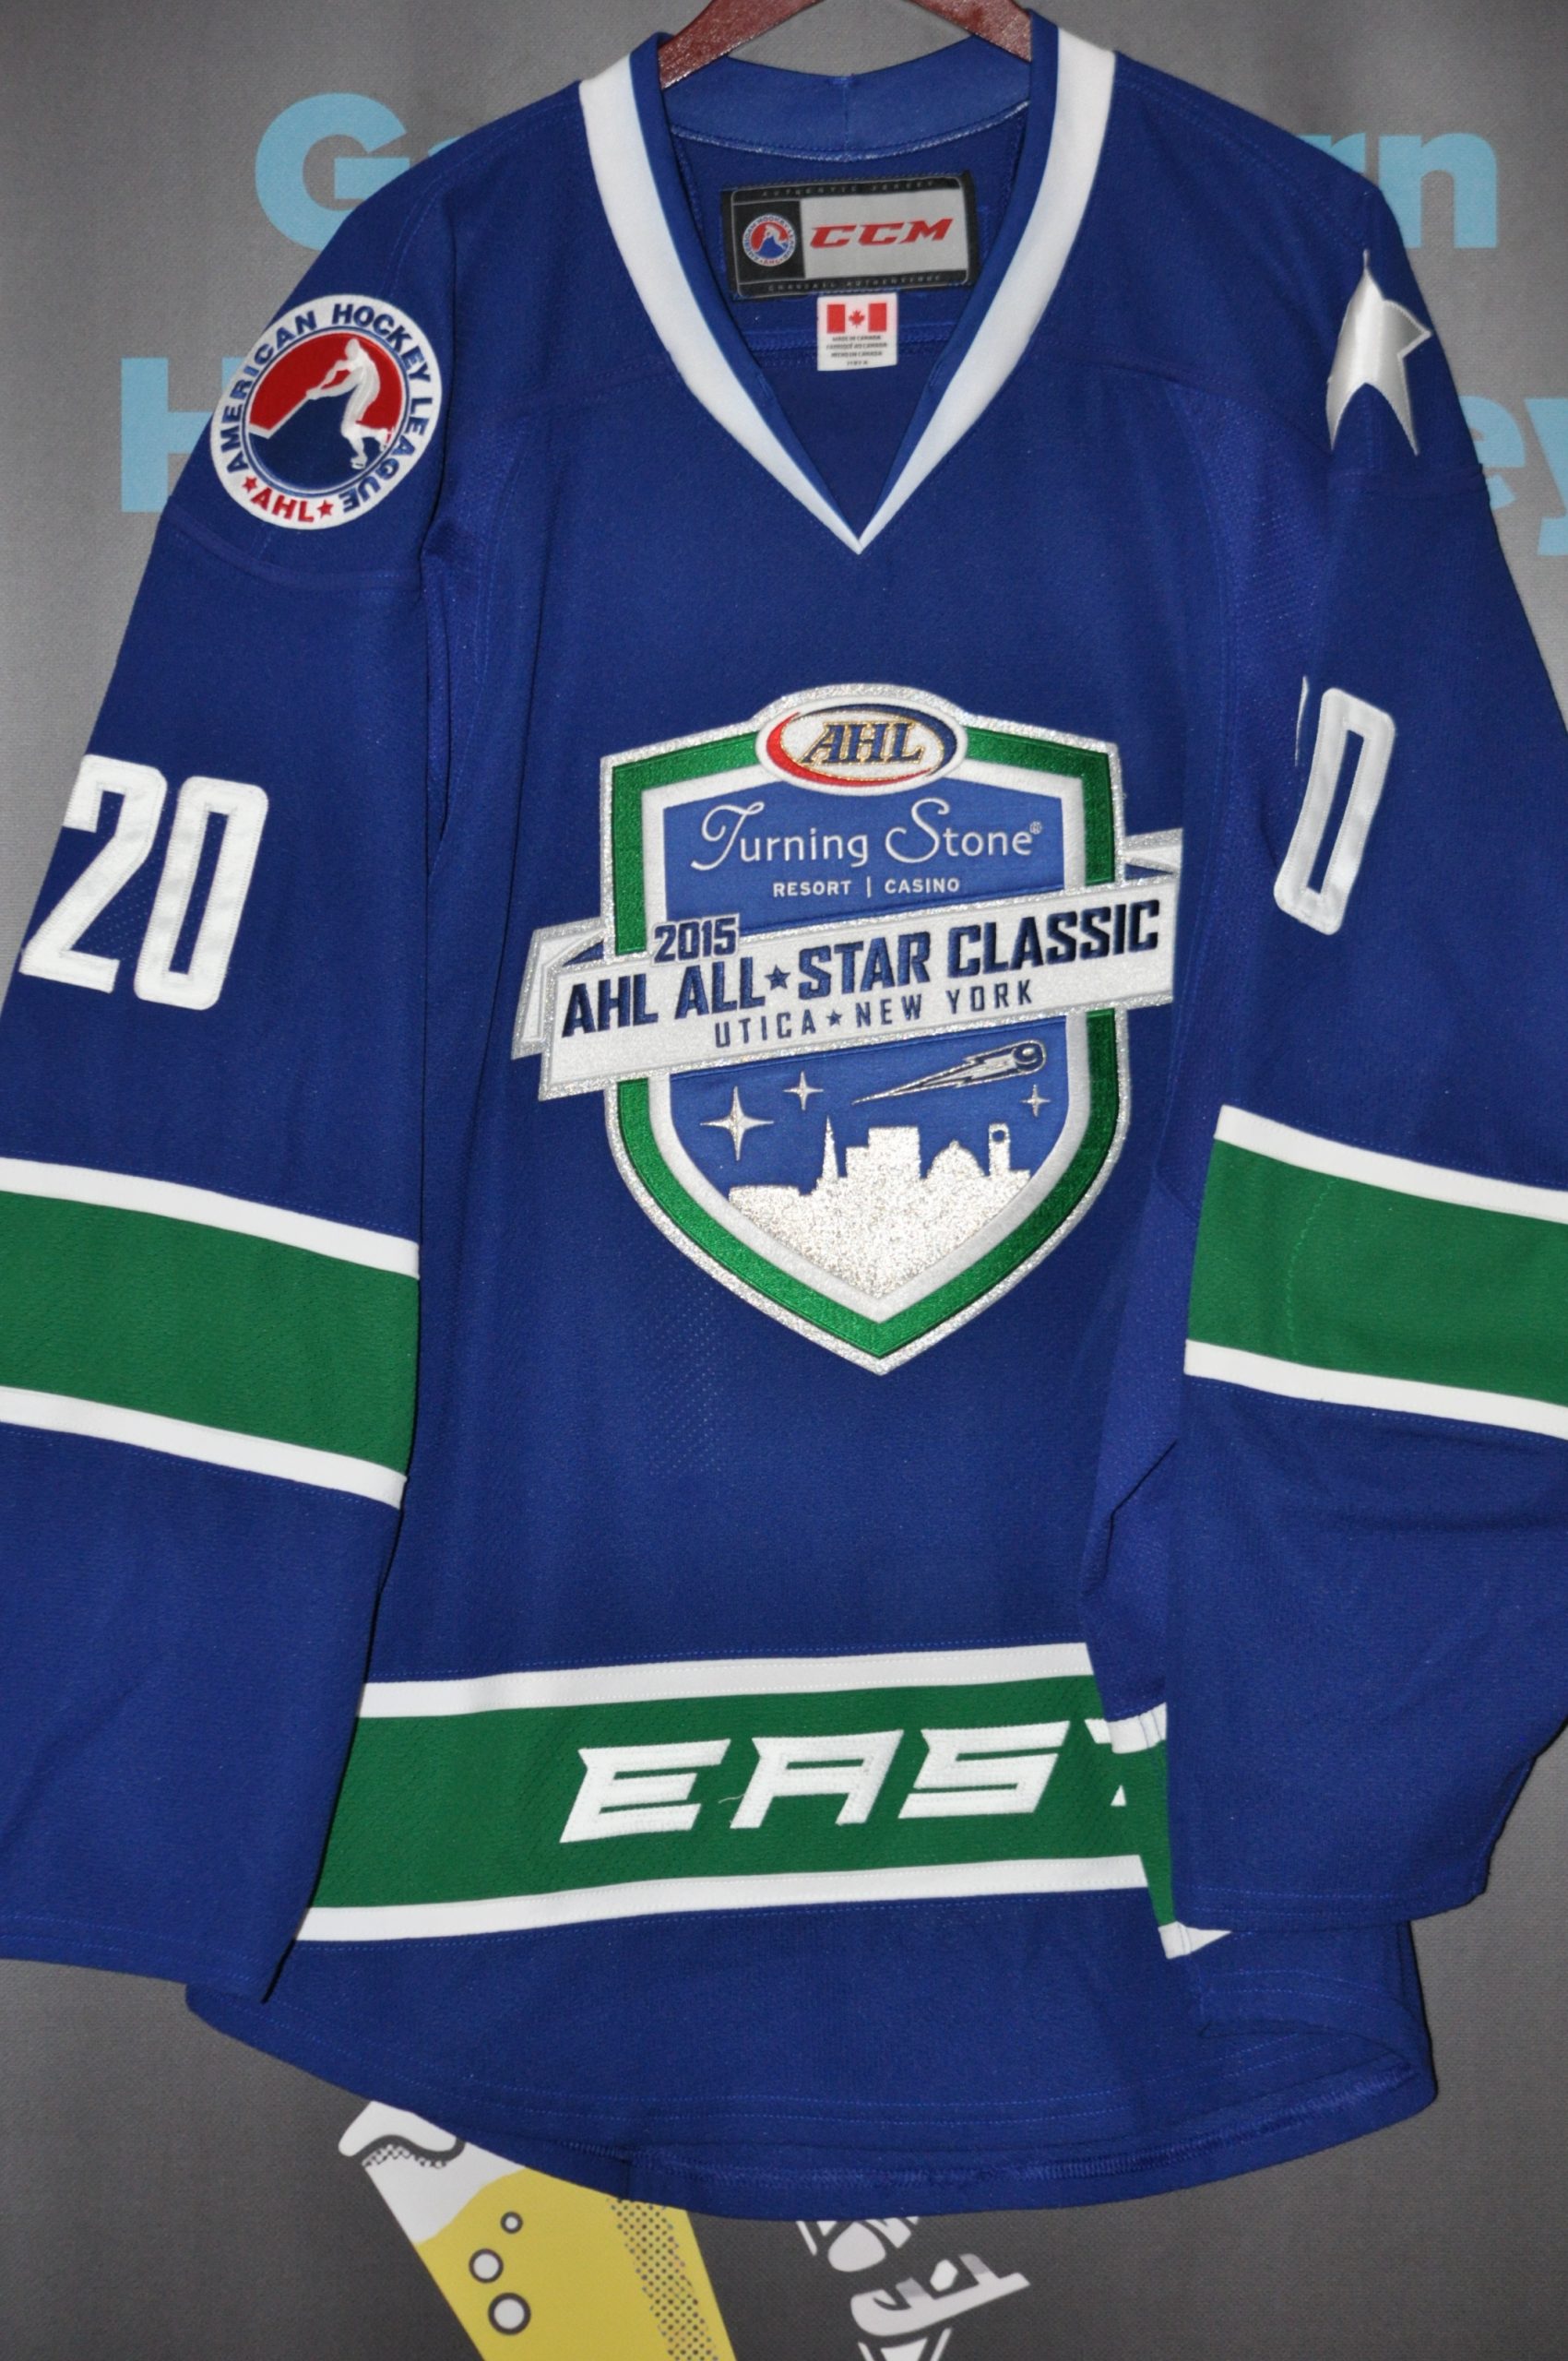 2012 #20 Matt Irwin AHL East All Star Classic jersey.